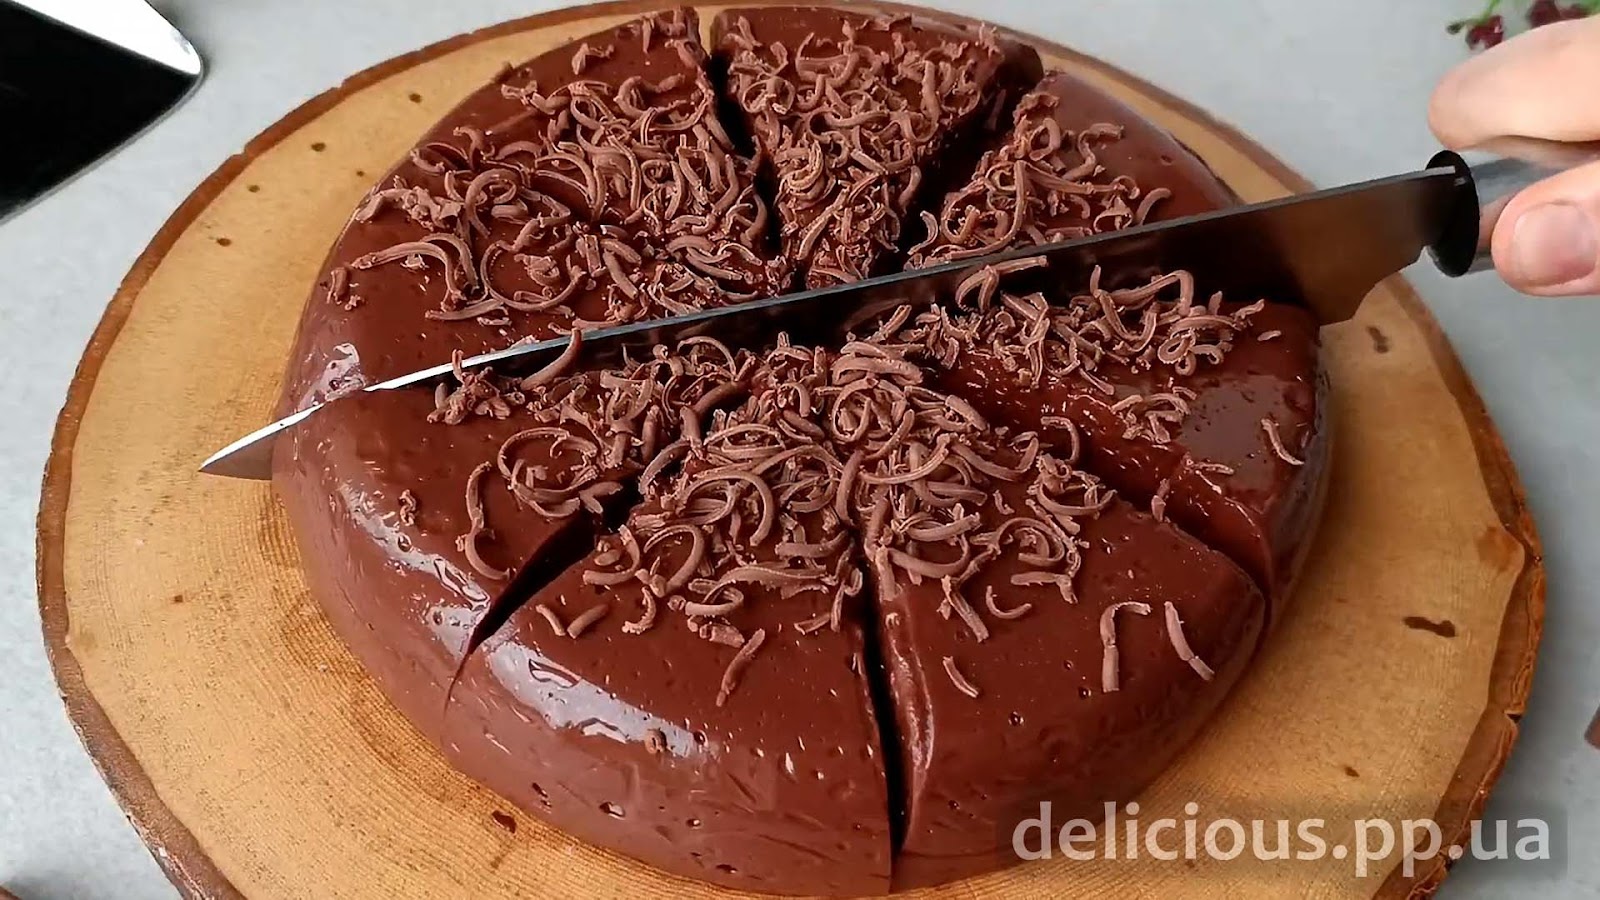 шоколадный Торт - Пудинг